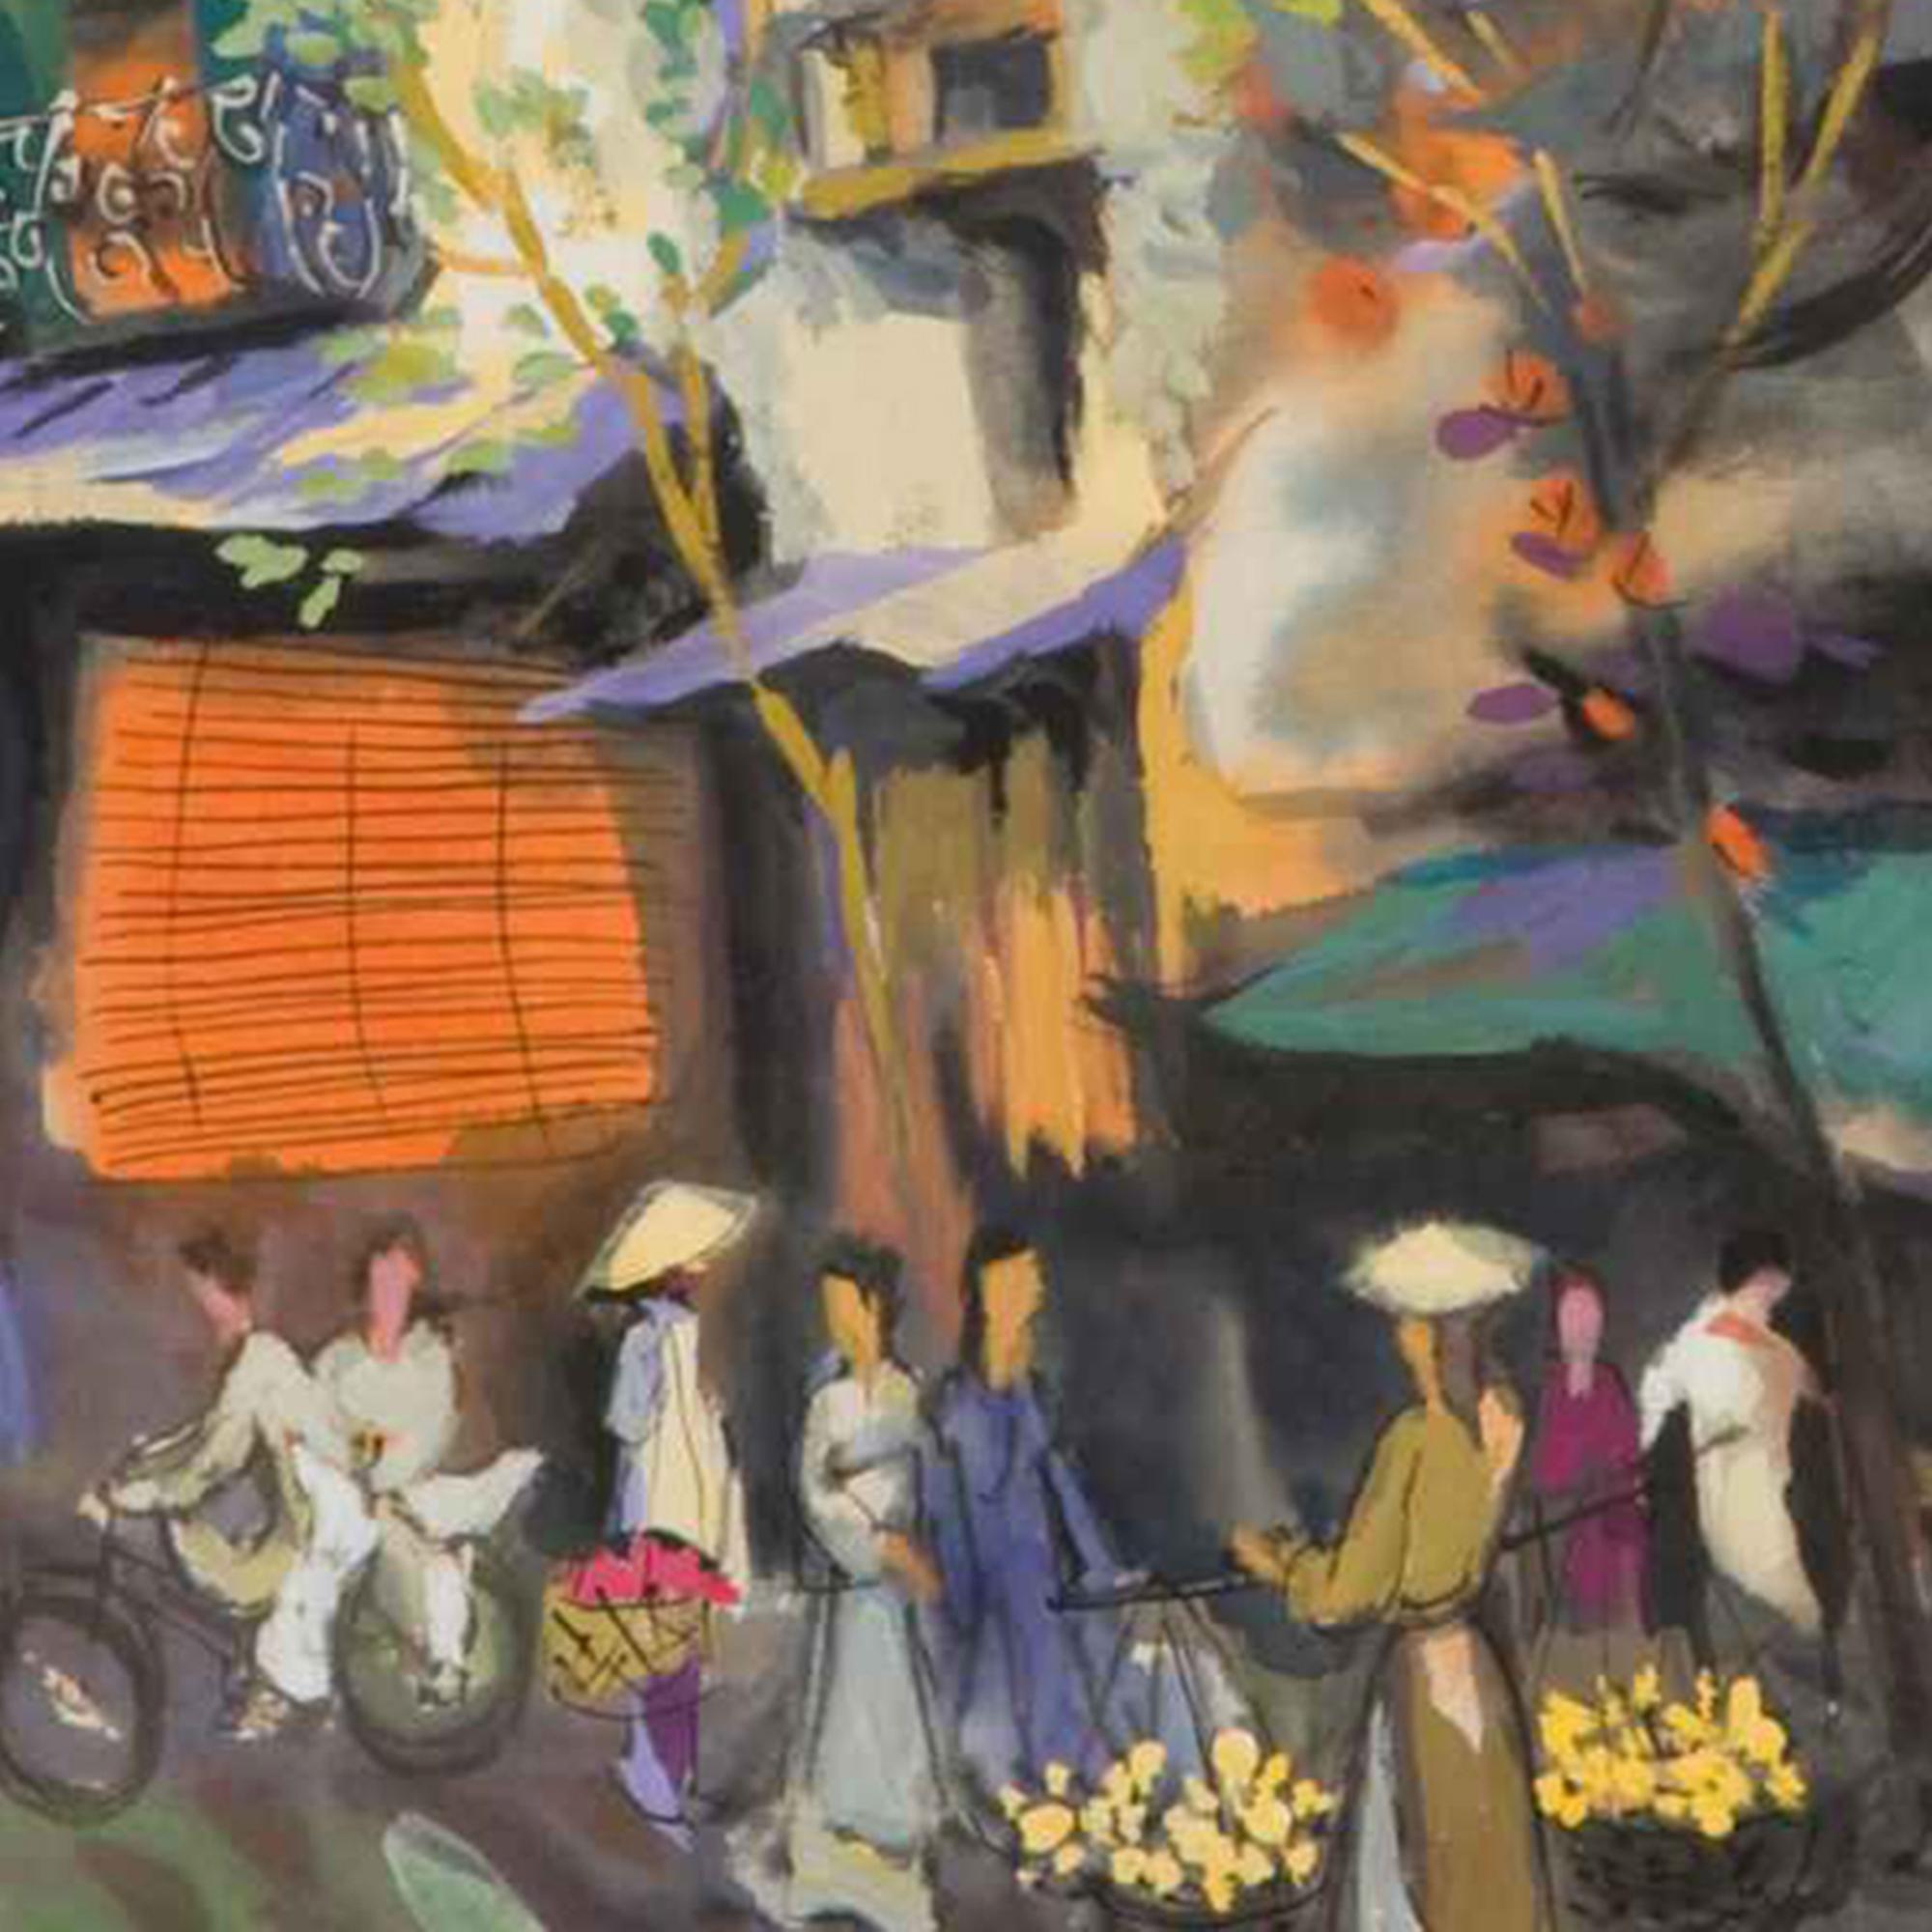 Duong Viet Nam est un artiste contemporain vietnamien connu pour son style de peinture post-impressionniste. Il capture souvent des scènes de ville pendant les moments les plus animés de la journée.  Dans ses peintures, on remarque l'architecture